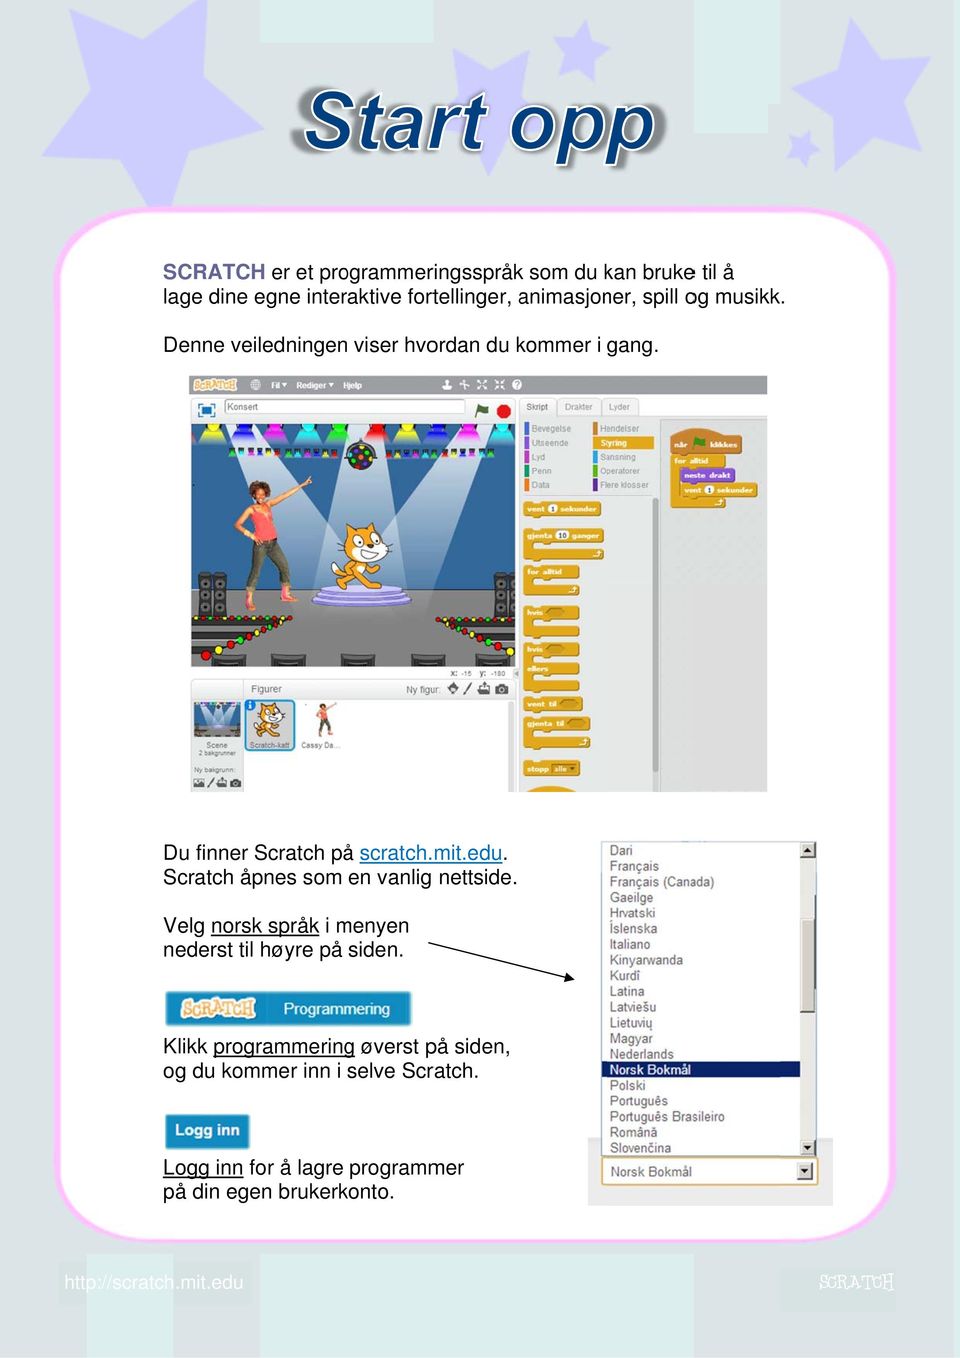 Scratch åpnes som en vanlig nettside. Velg norsk språk i menyen nederst til høyre på siden.